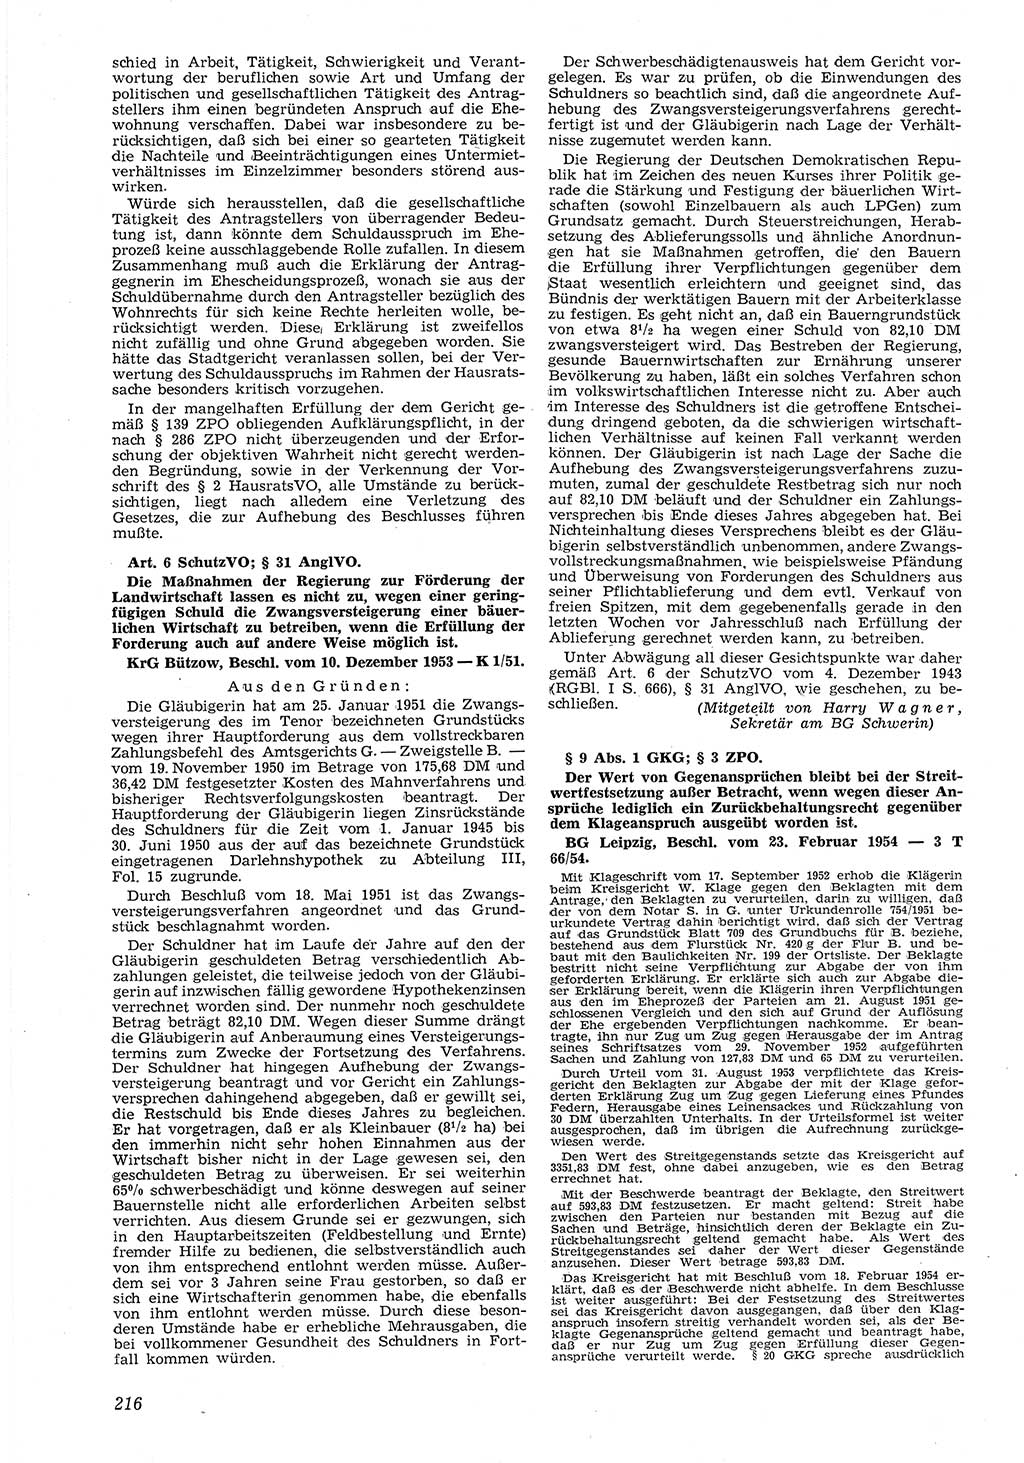 Neue Justiz (NJ), Zeitschrift für Recht und Rechtswissenschaft [Deutsche Demokratische Republik (DDR)], 8. Jahrgang 1954, Seite 216 (NJ DDR 1954, S. 216)